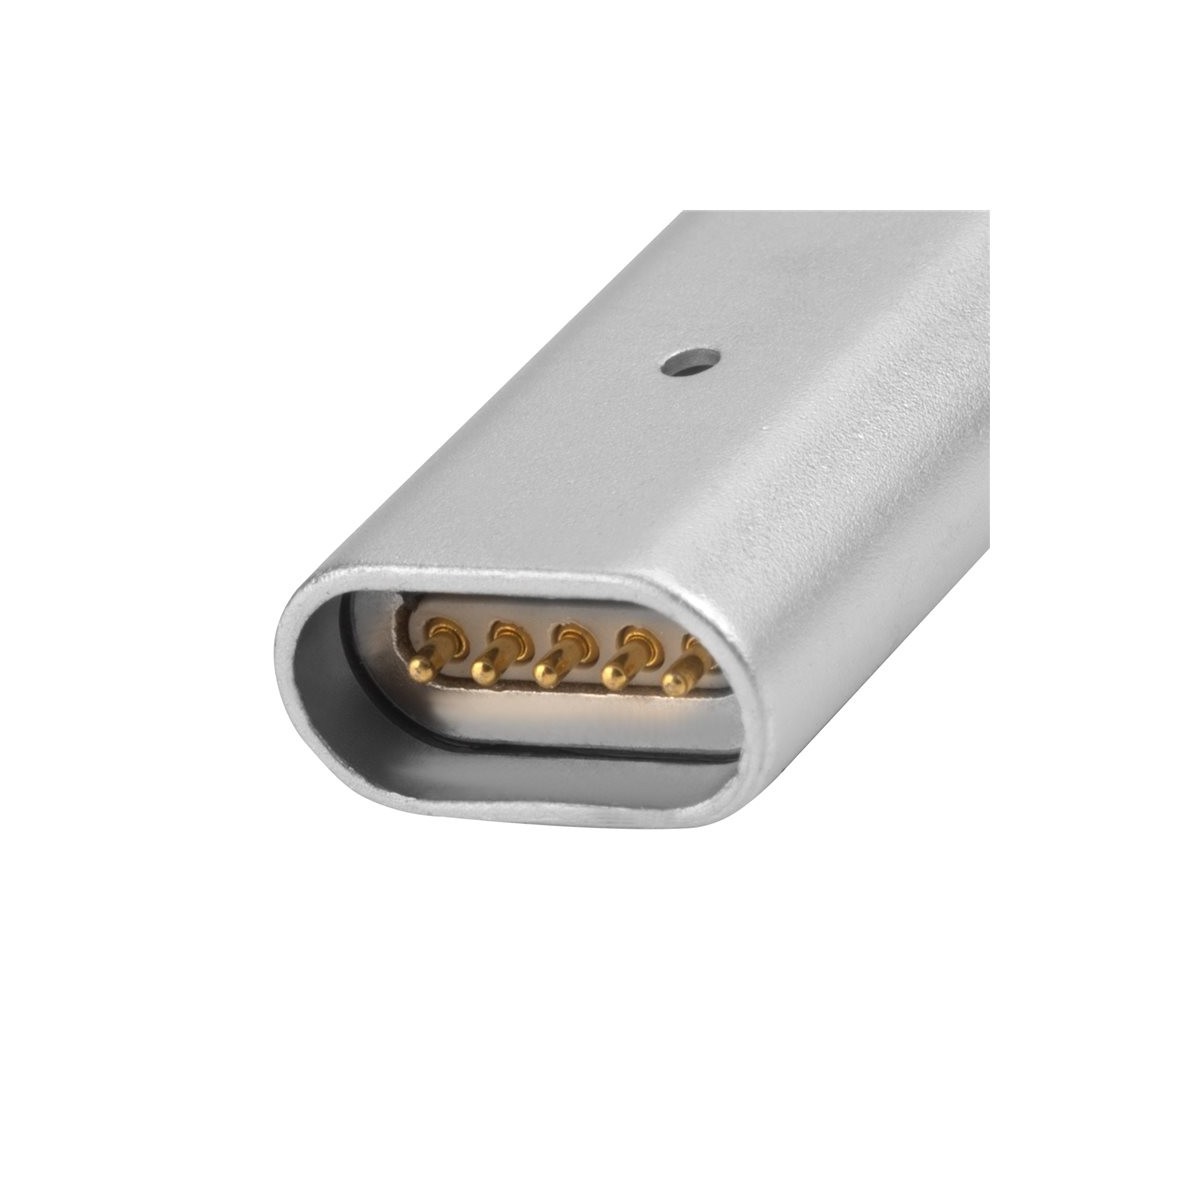 Câble USB vers connecteurs Lightning et Micro USB magnétiques Gris 1 mètre - 4smarts